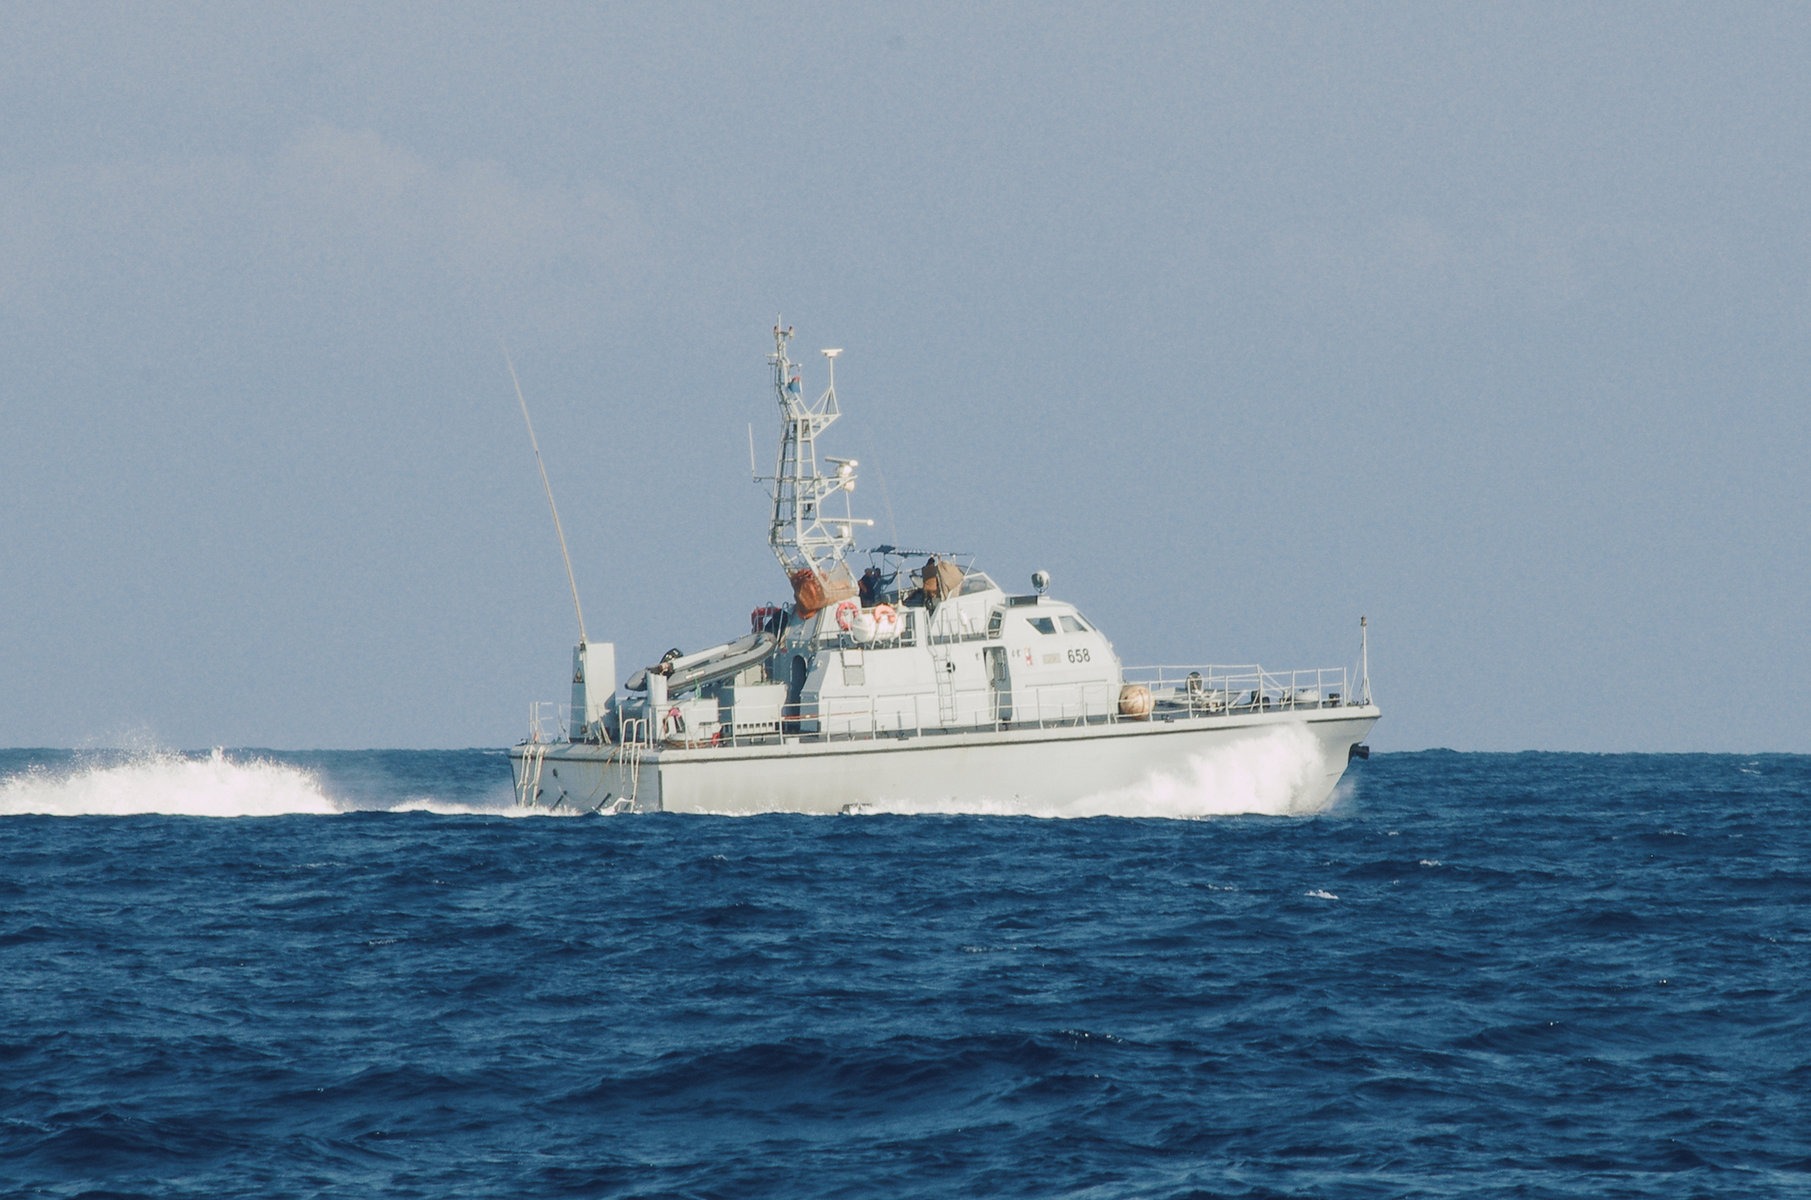 resqship-mission-libysches-küstenwachschiff